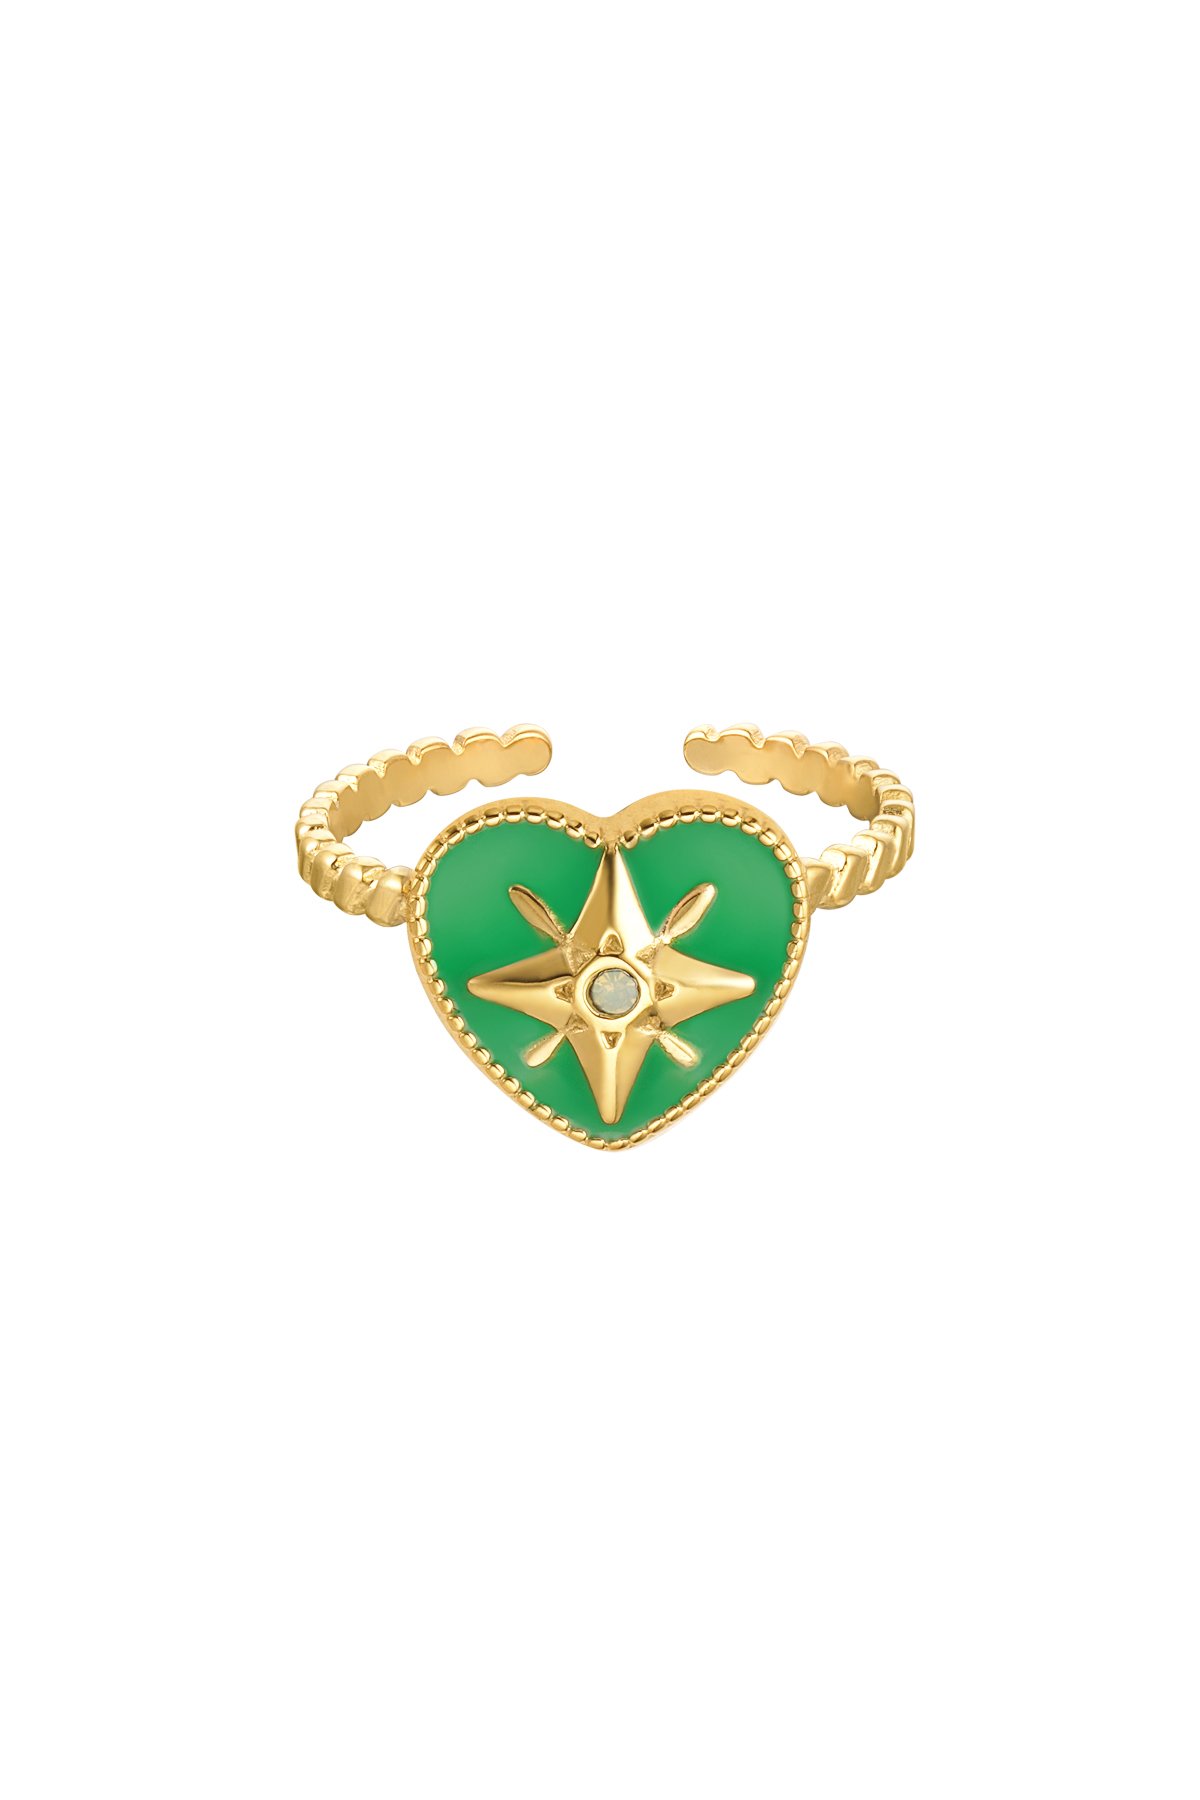 Anello cuore colorato con stella smalto verde - oro